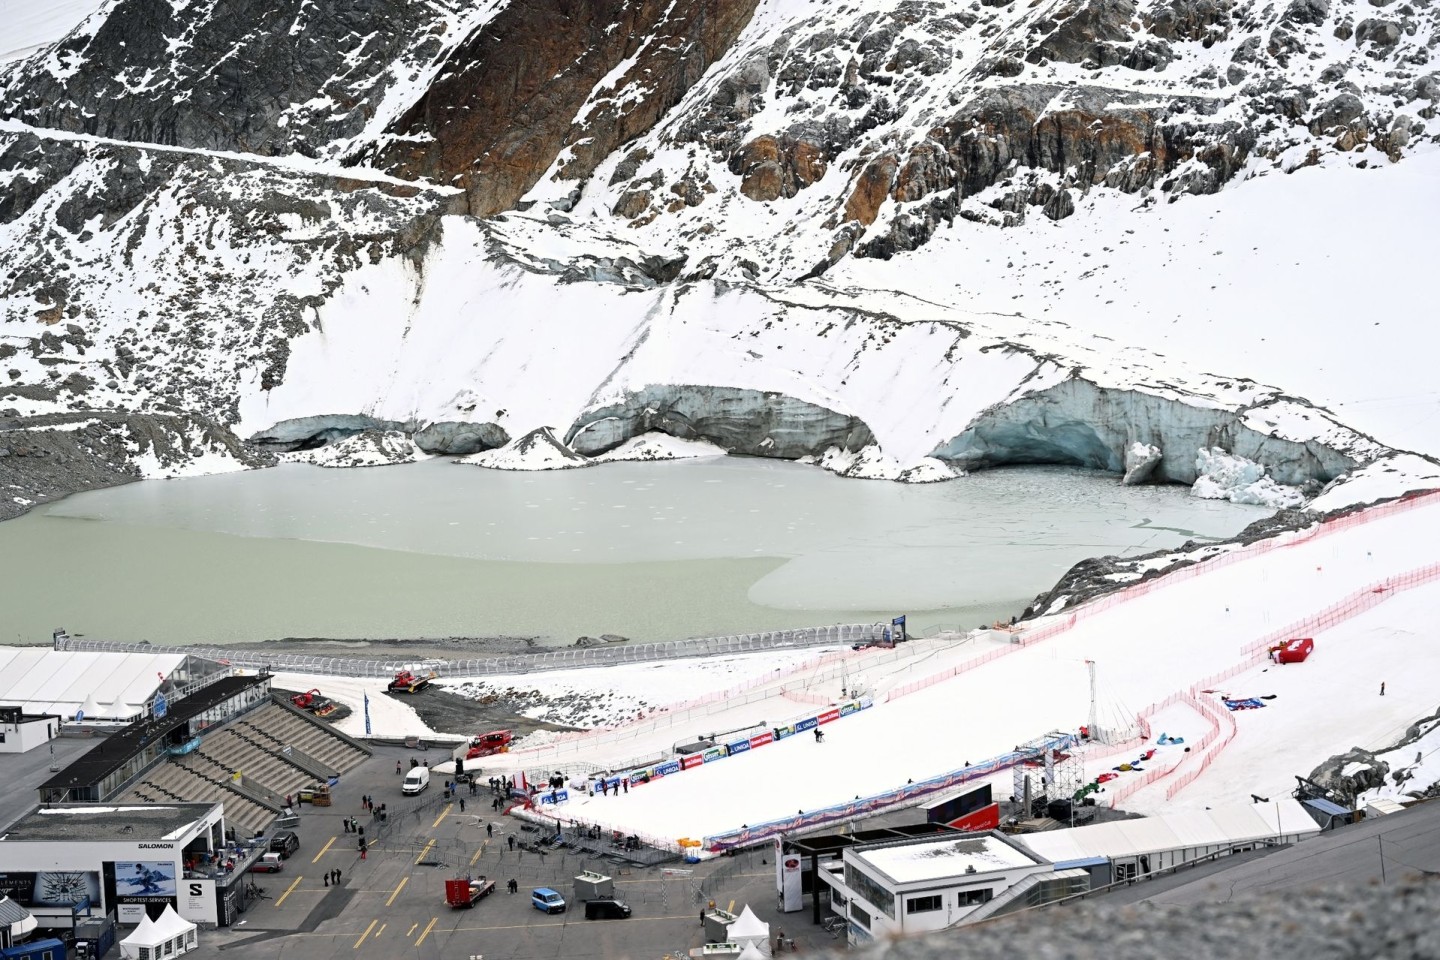 Blick auf die Abrisskante des Gletschers und der Zielbereich der Alpinen Ski-Weltcupstrecke am Rettenbachferner in Tirol.